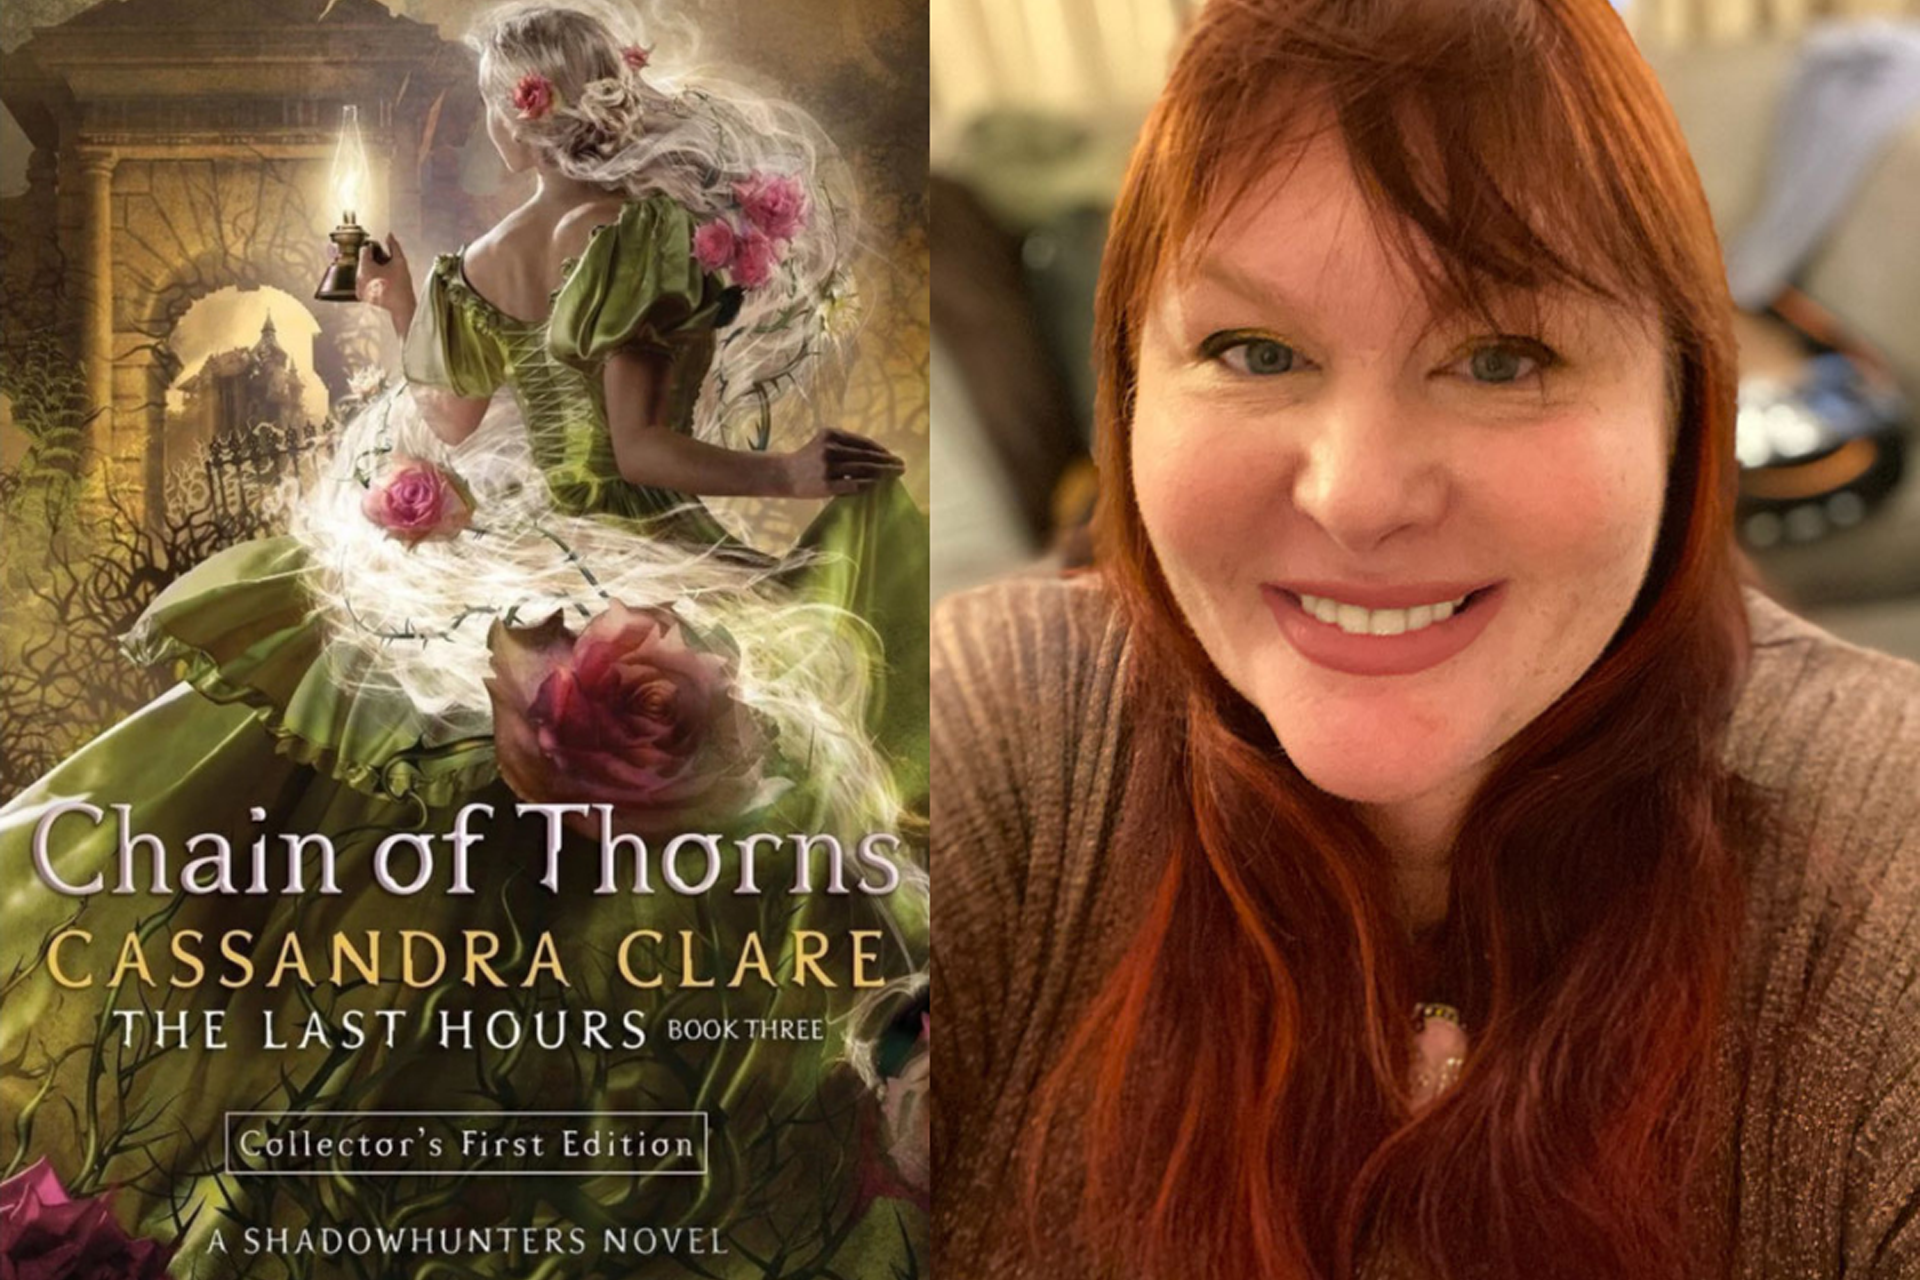 Author Cassandra Clare